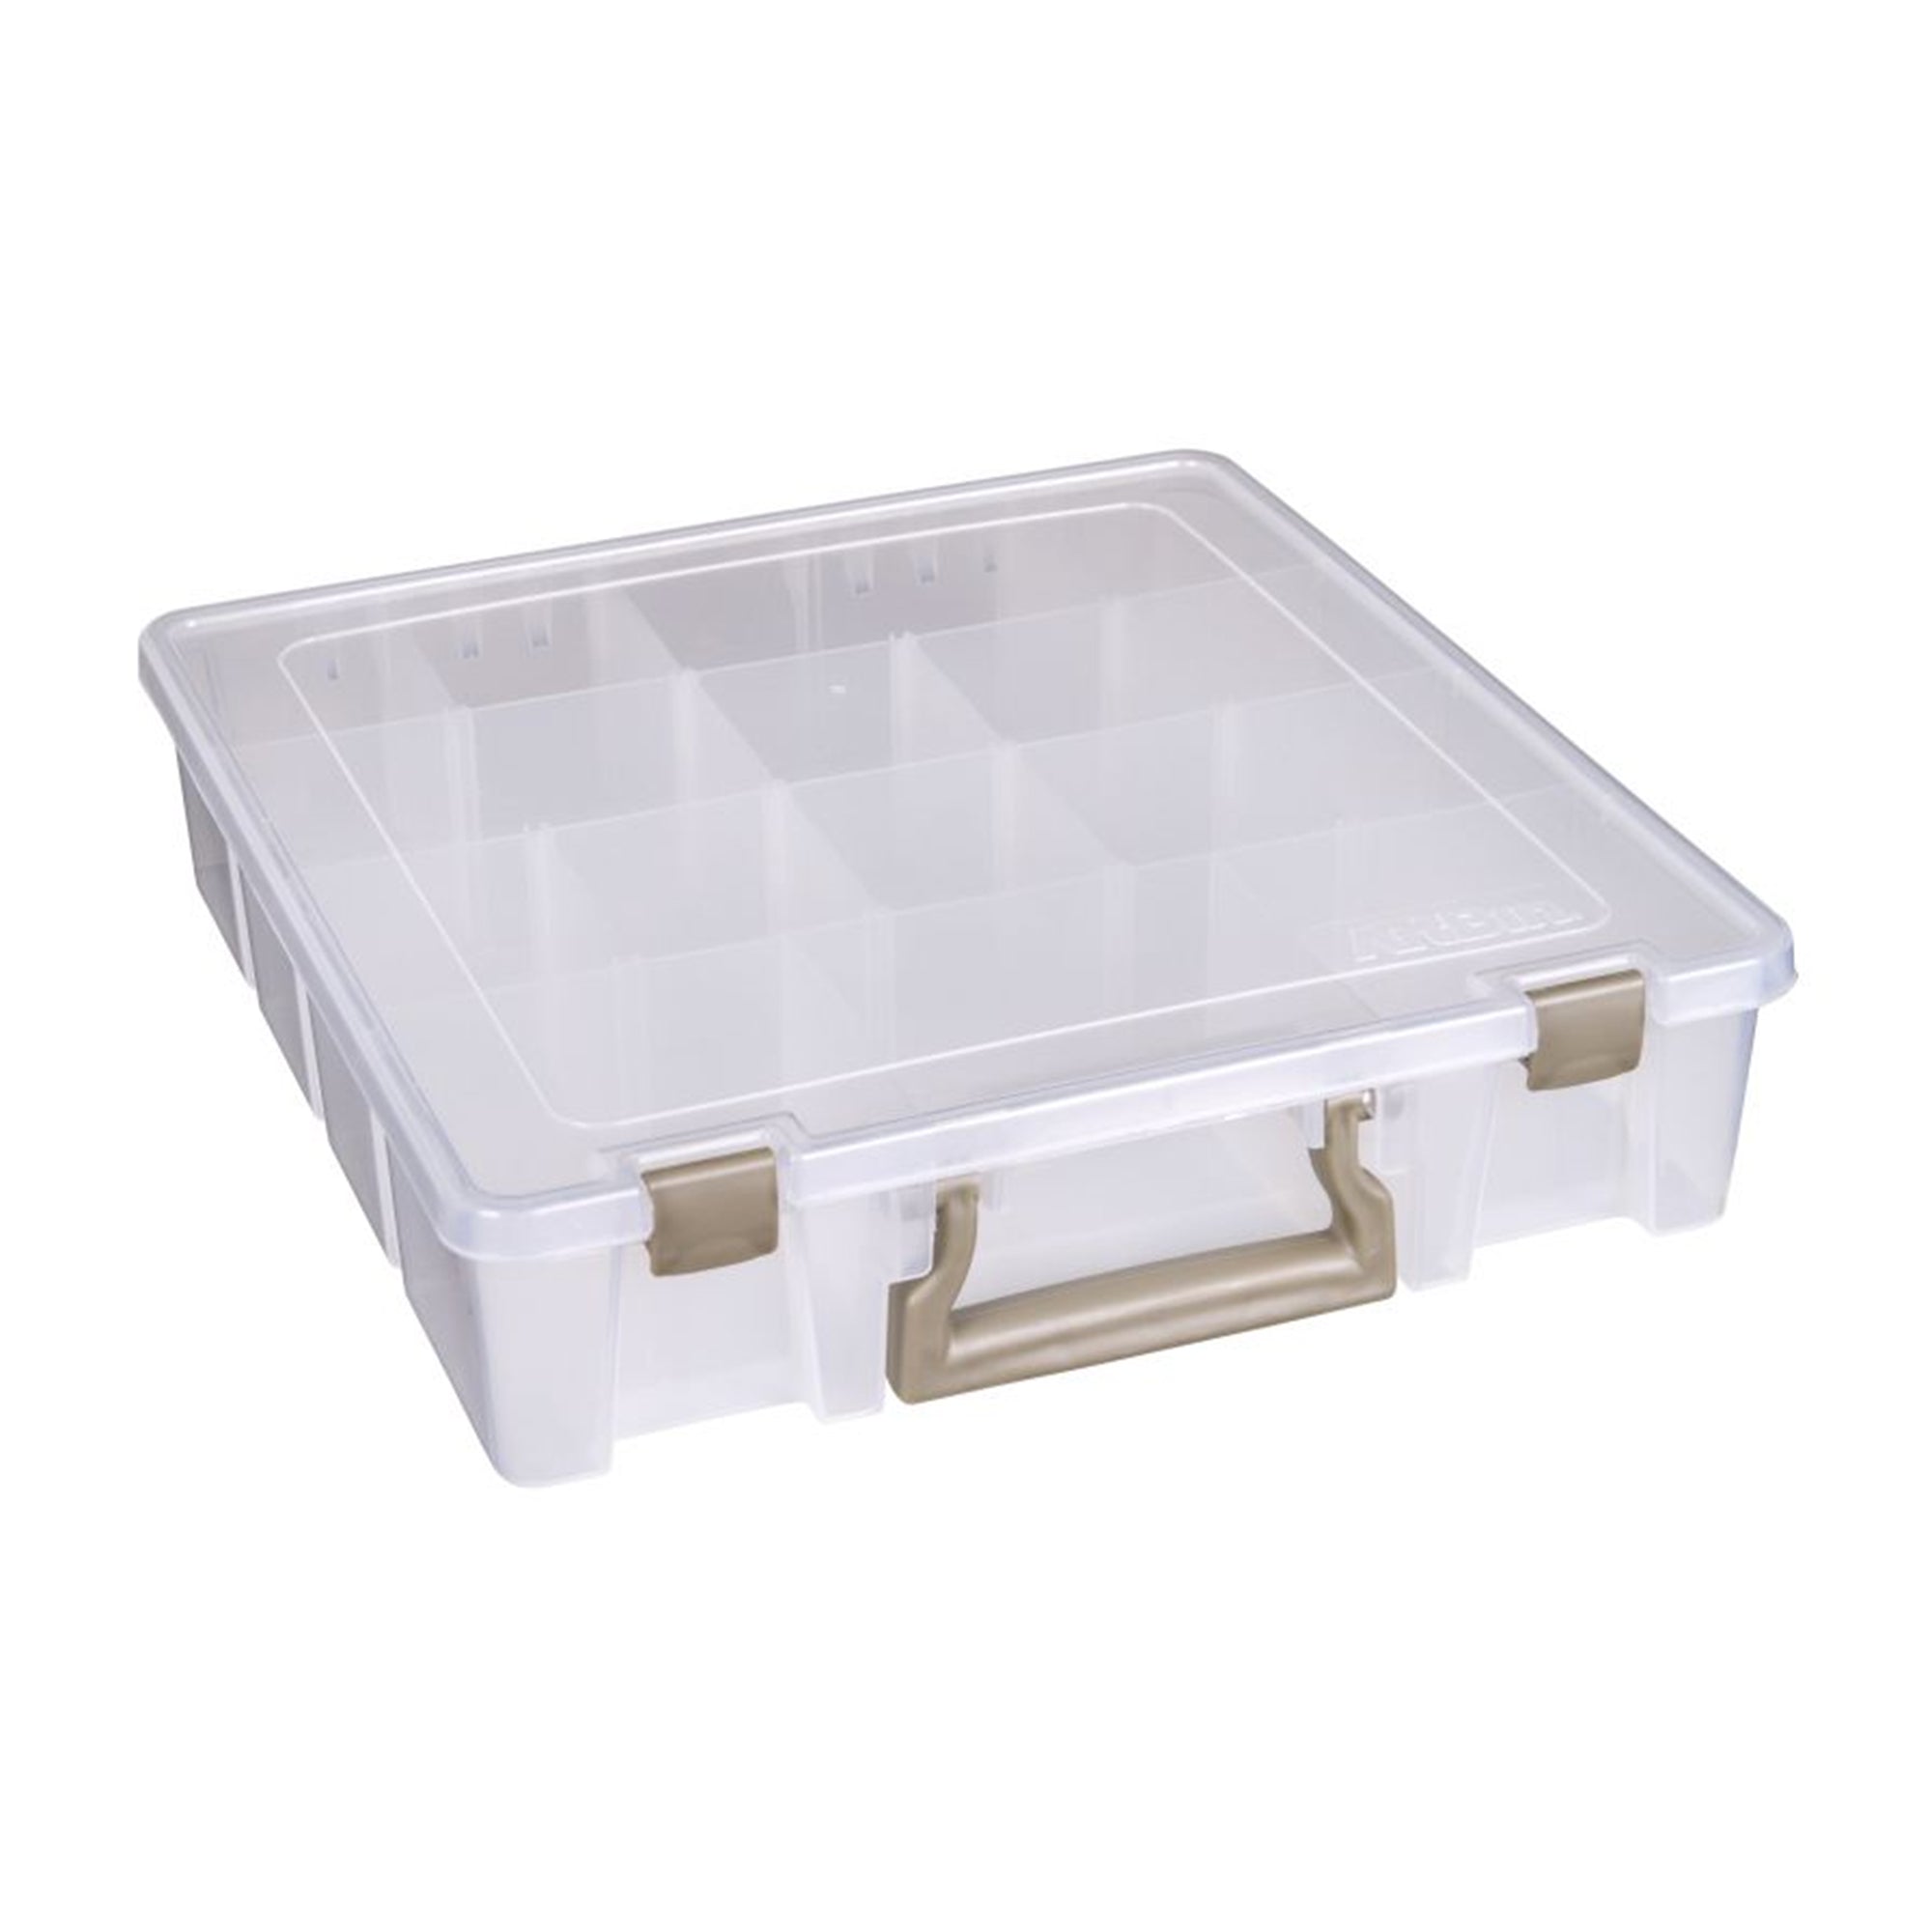 ArtBin 3-Tray Box